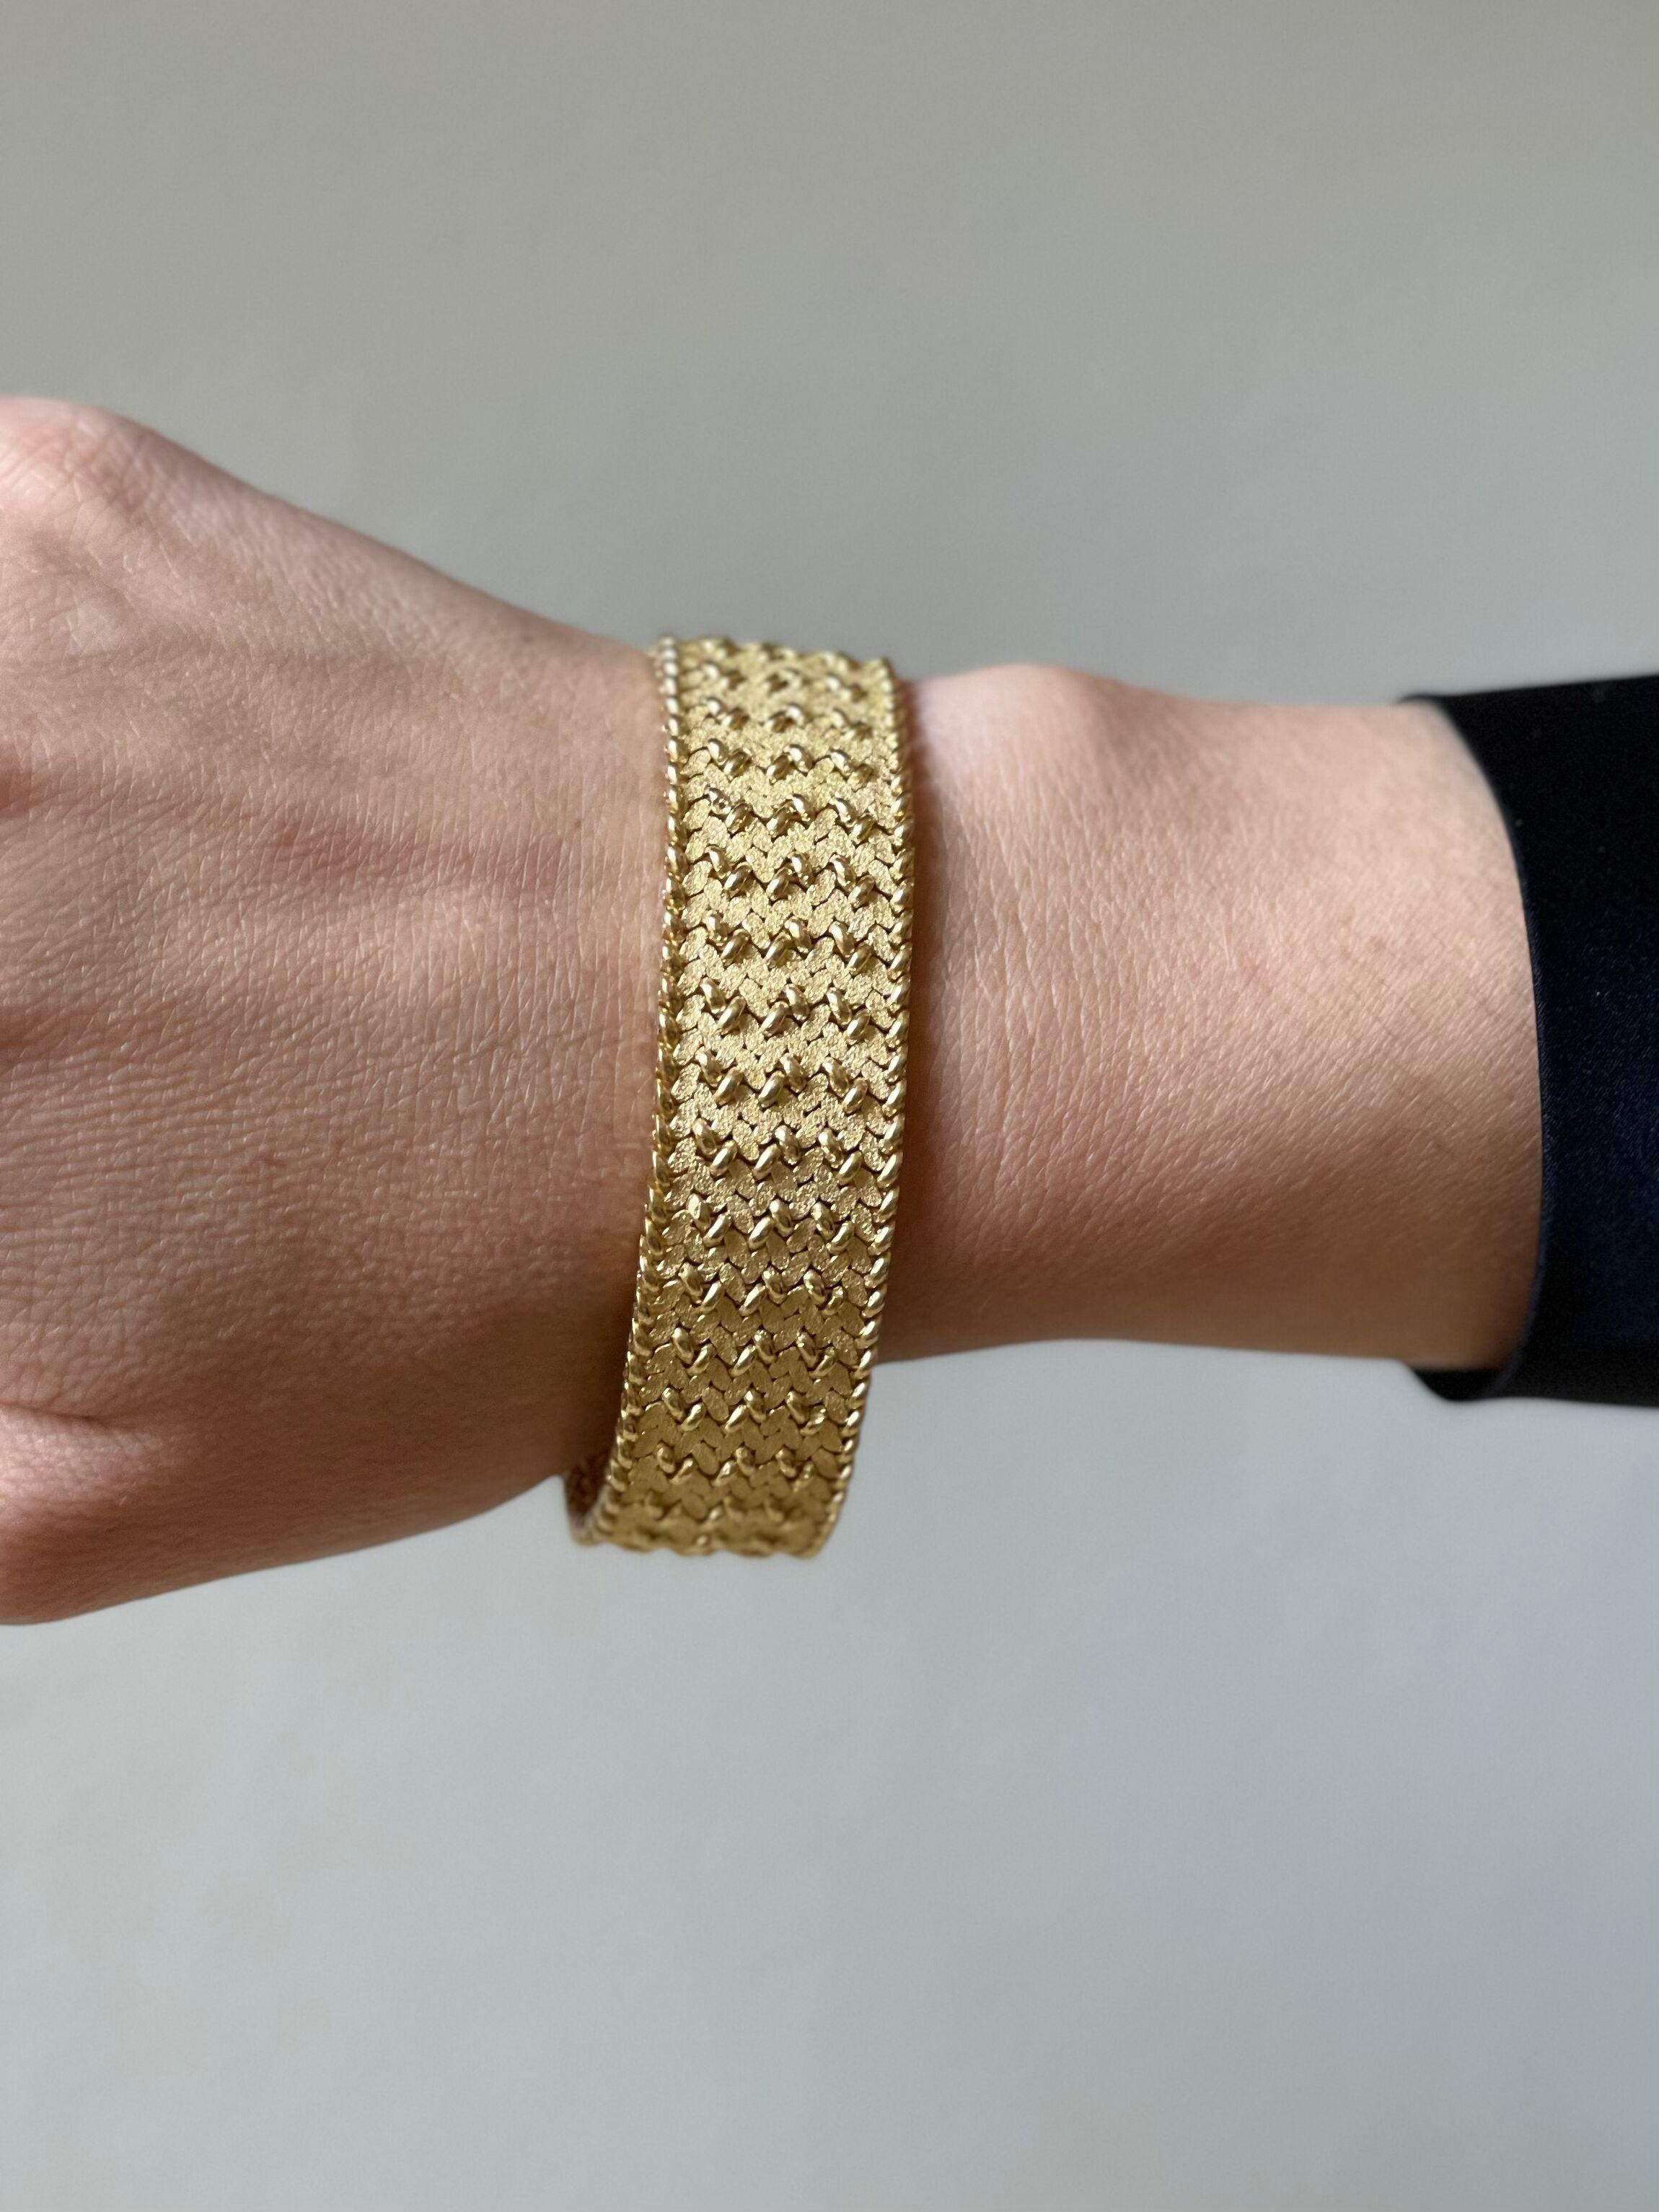 Vintage 18k gold bracelet by Hermes Paris. The bracelet is 7 3/8